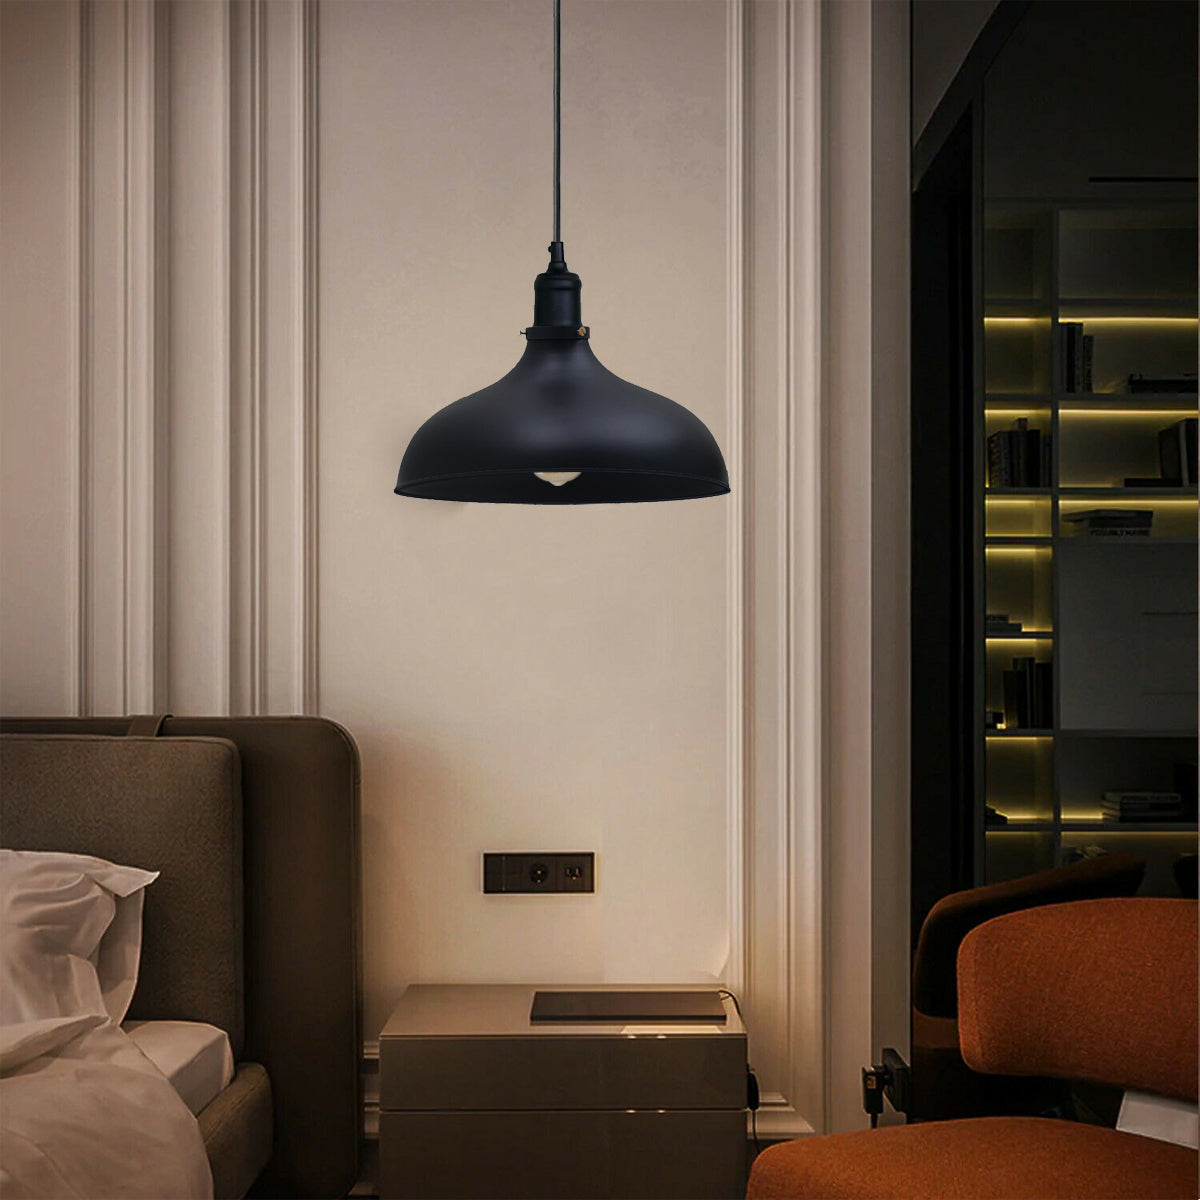 Black Industrial Retro Ceiling Pendant Light~1478 - LEDSone UK Ltd